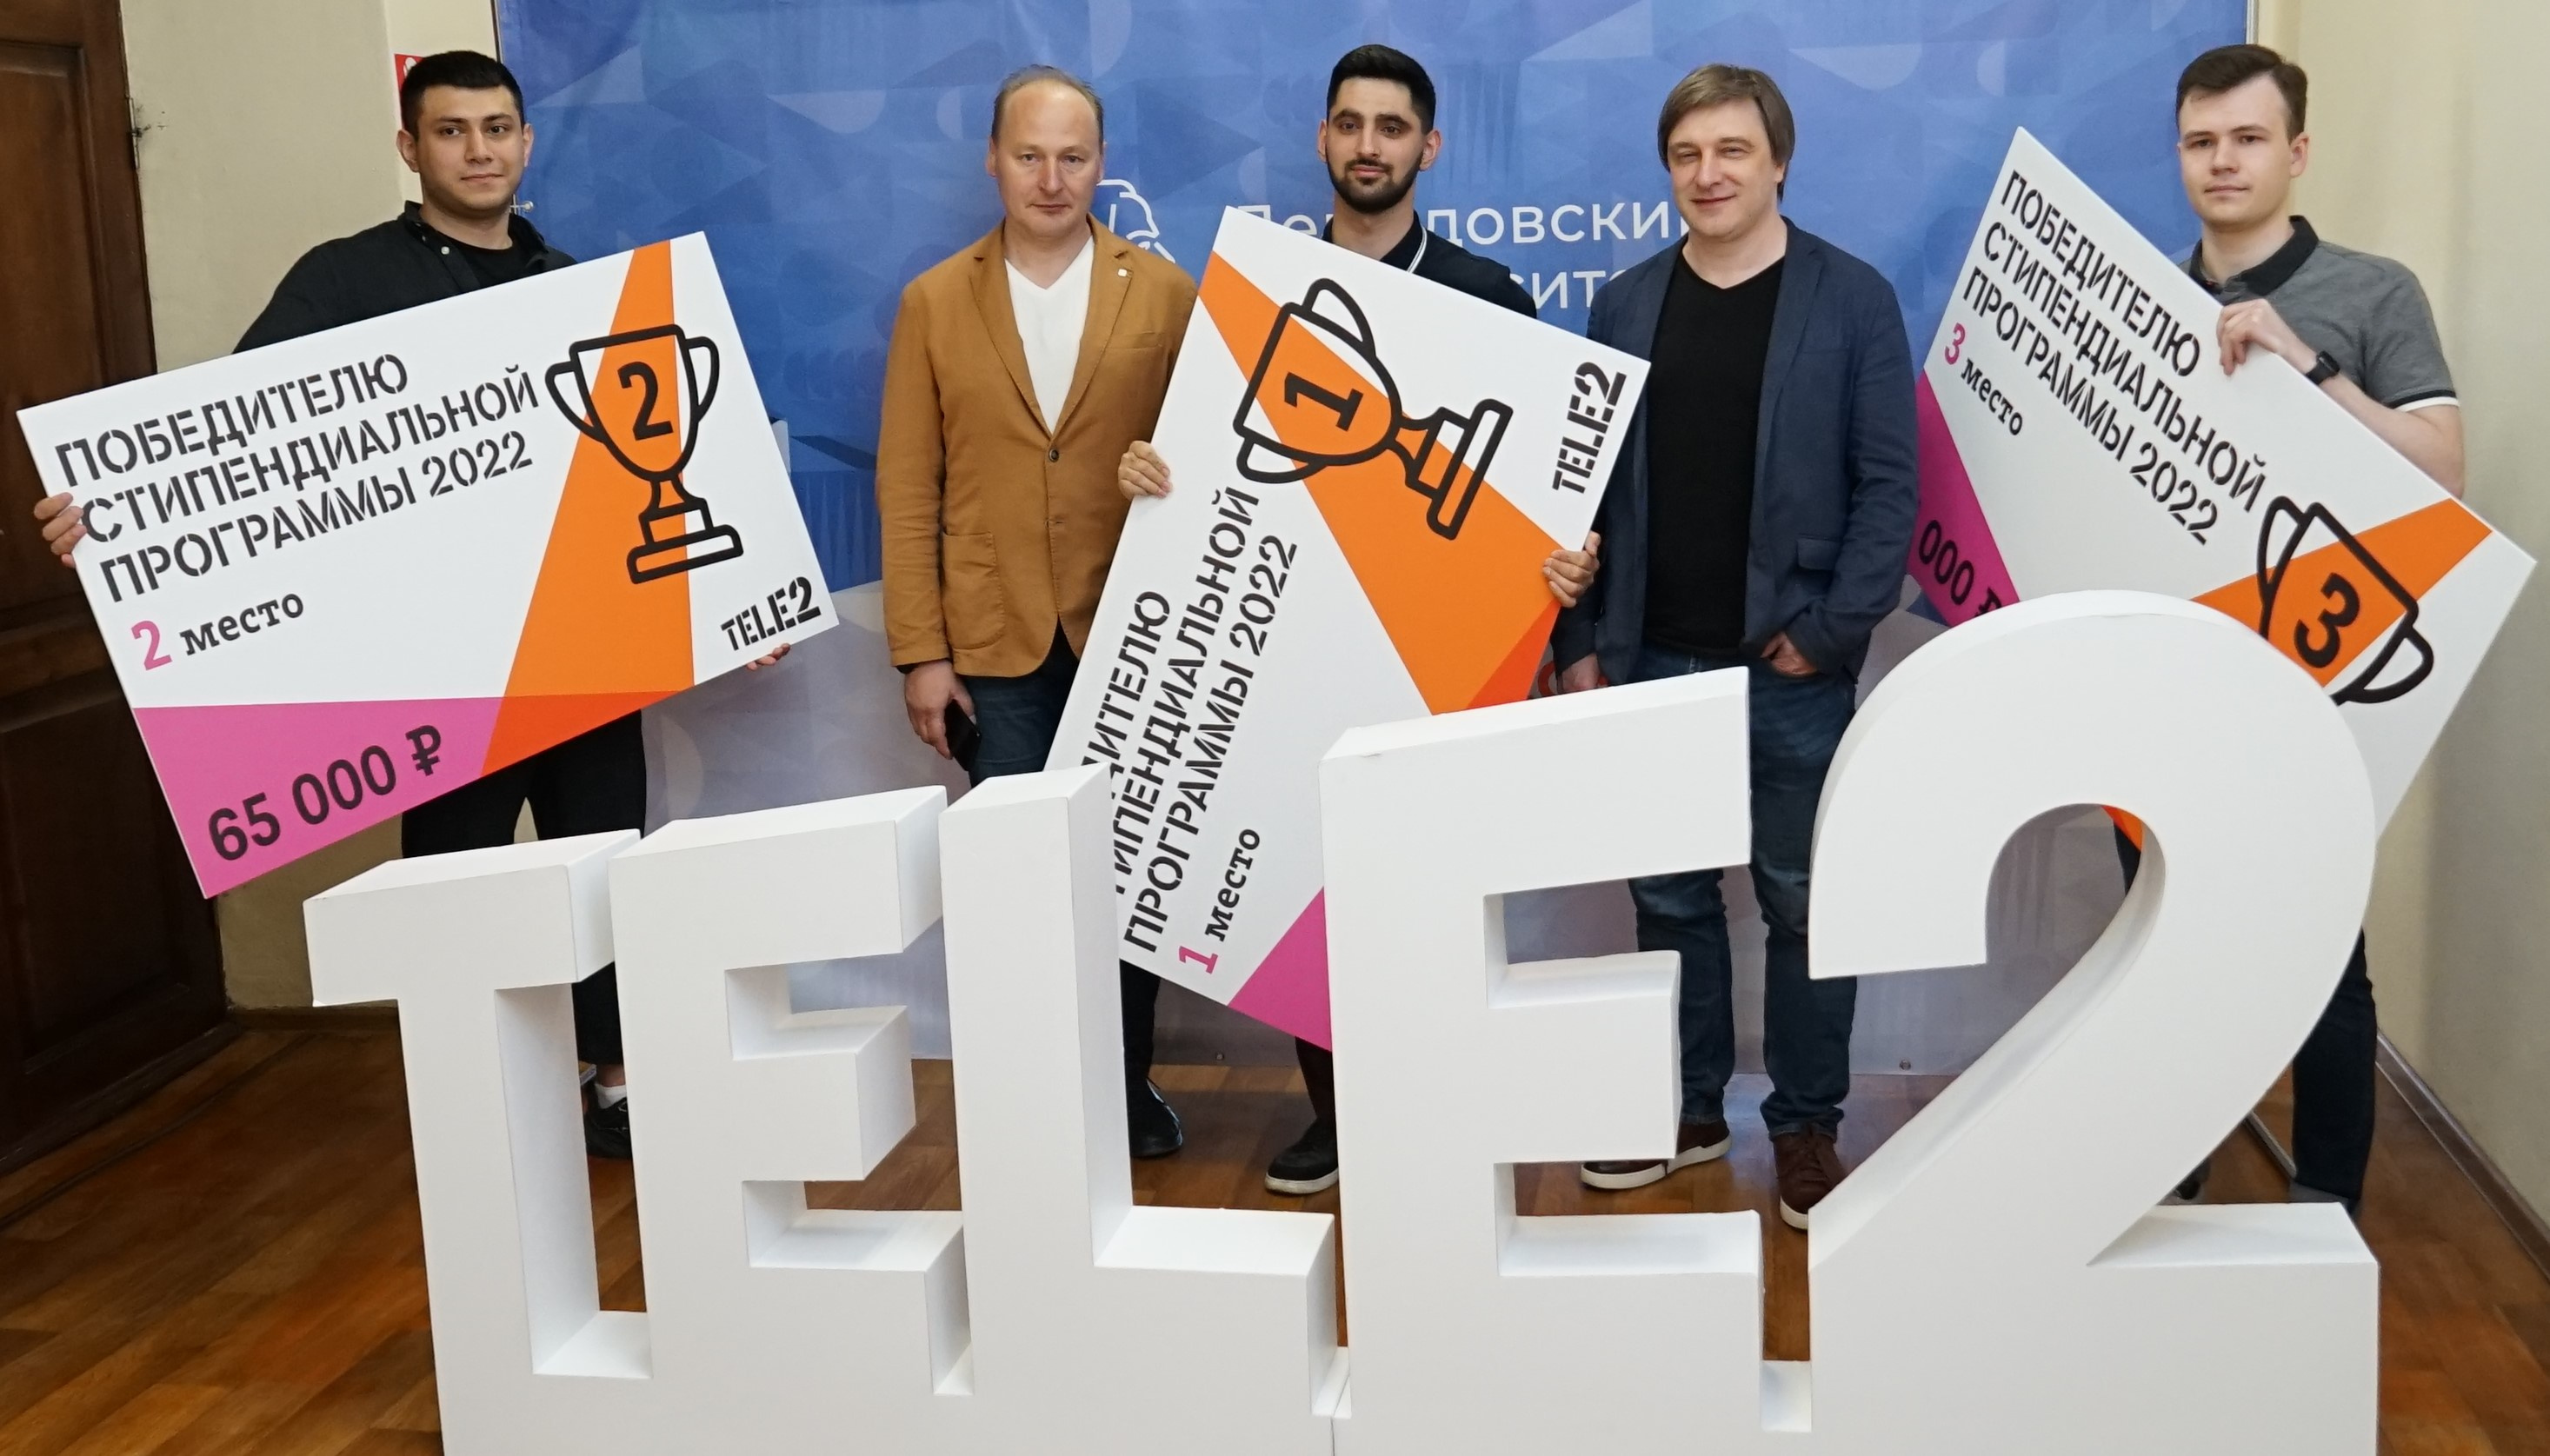 С 2020 года Tele2 поддерживает события вуза и проводит обучающие мероприятия для студентов